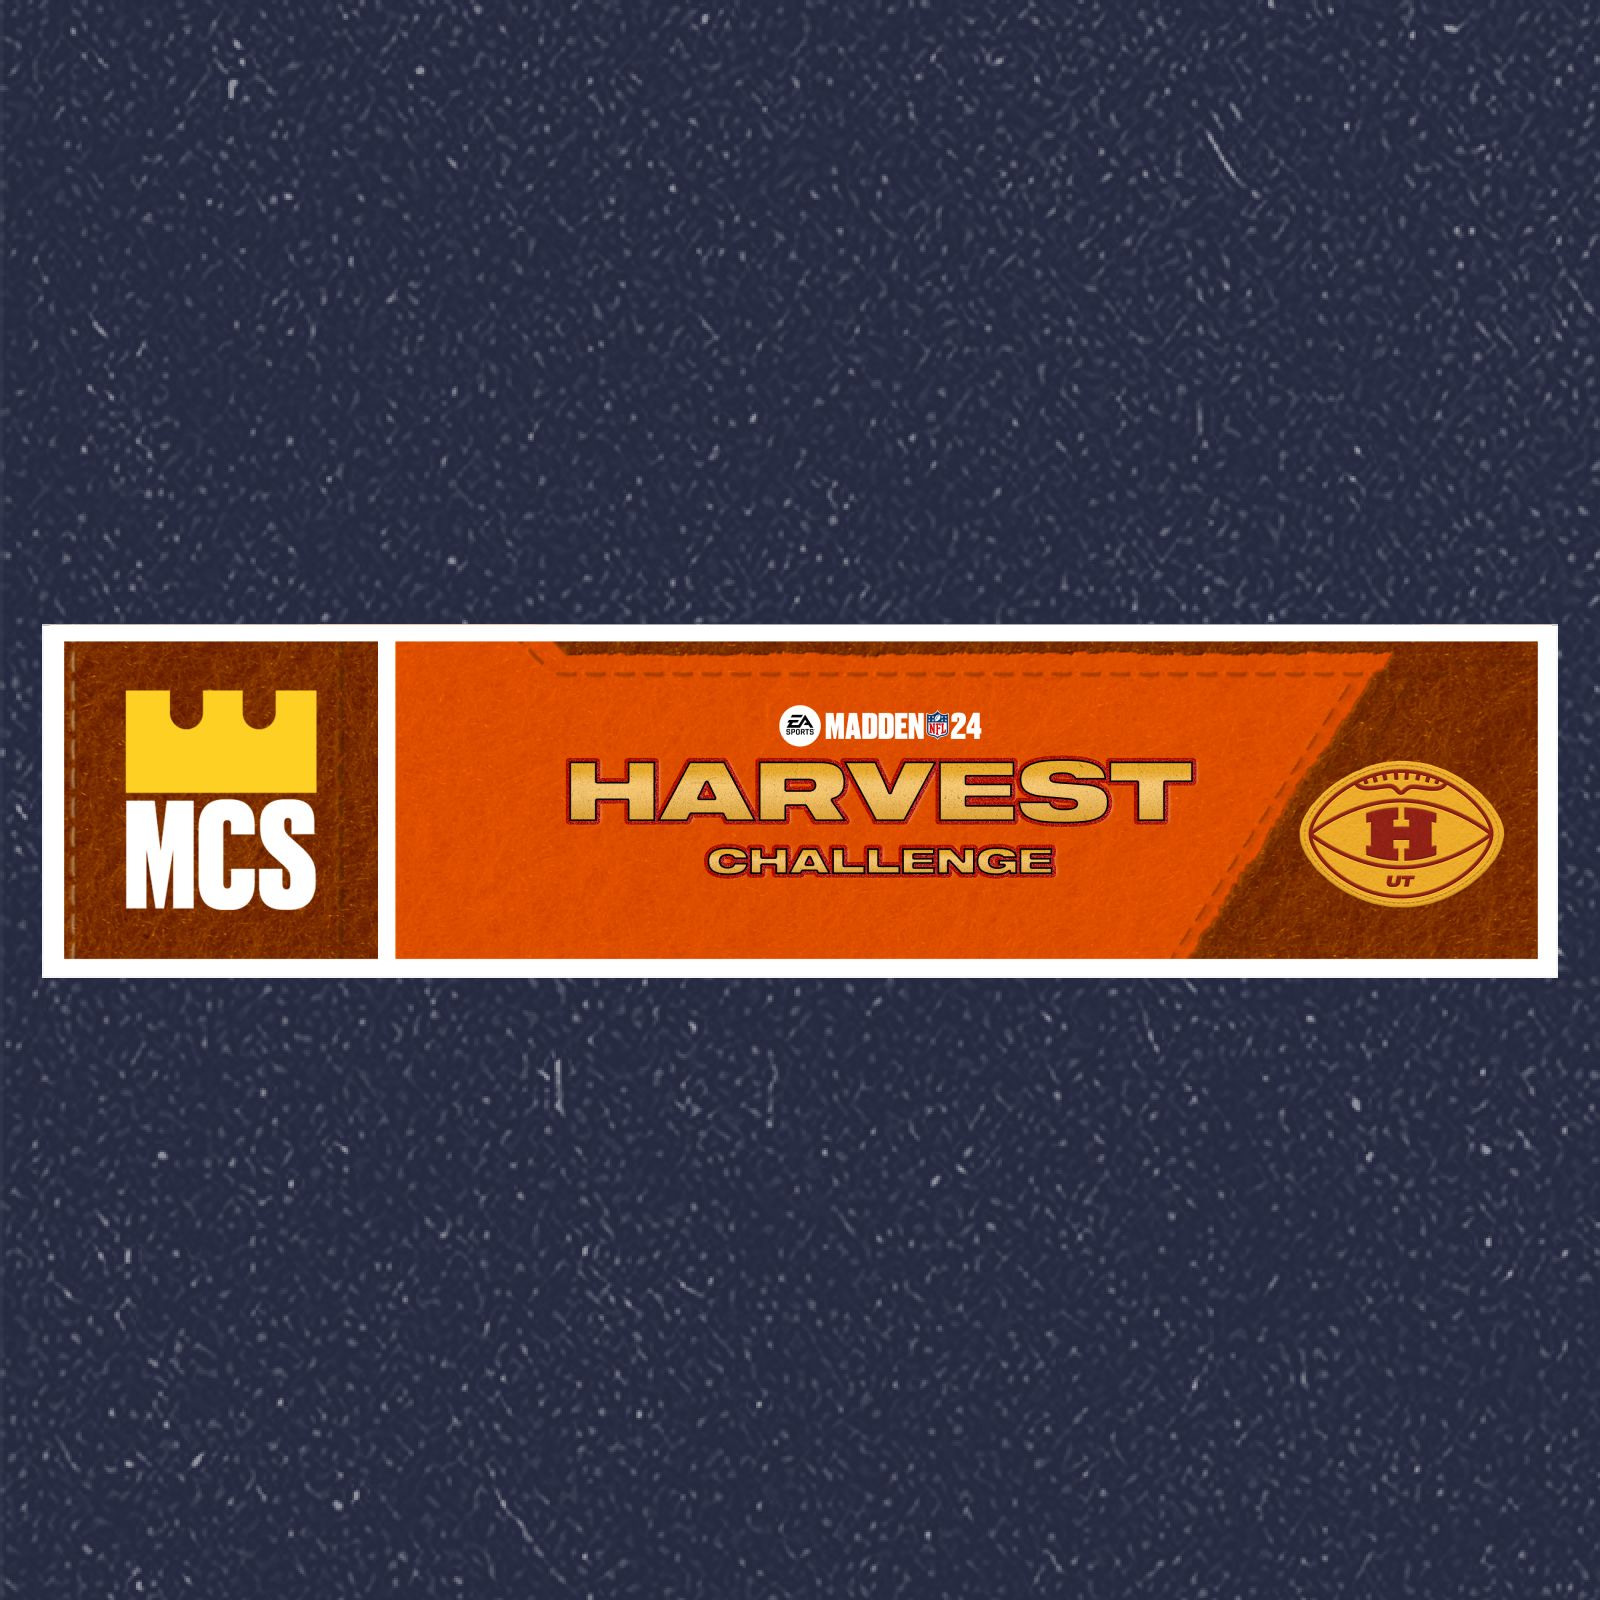 Madden 24 Harvest program MCS Harvest Challenge 